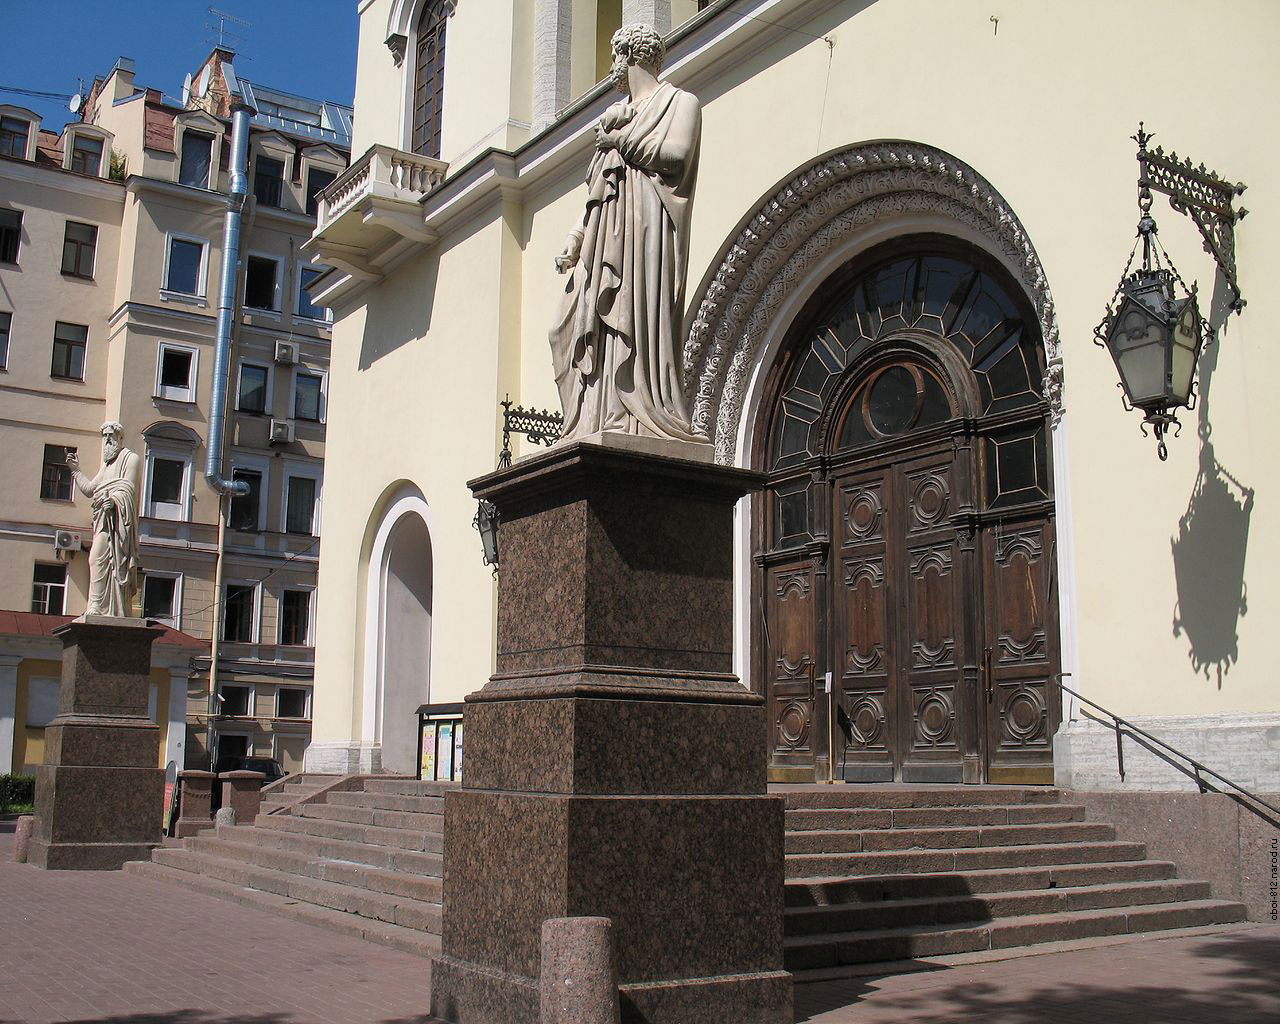 Евангелическо-лютеранская немецкая церковь святого Петра, на фото статуи апостолов Петра и Павла